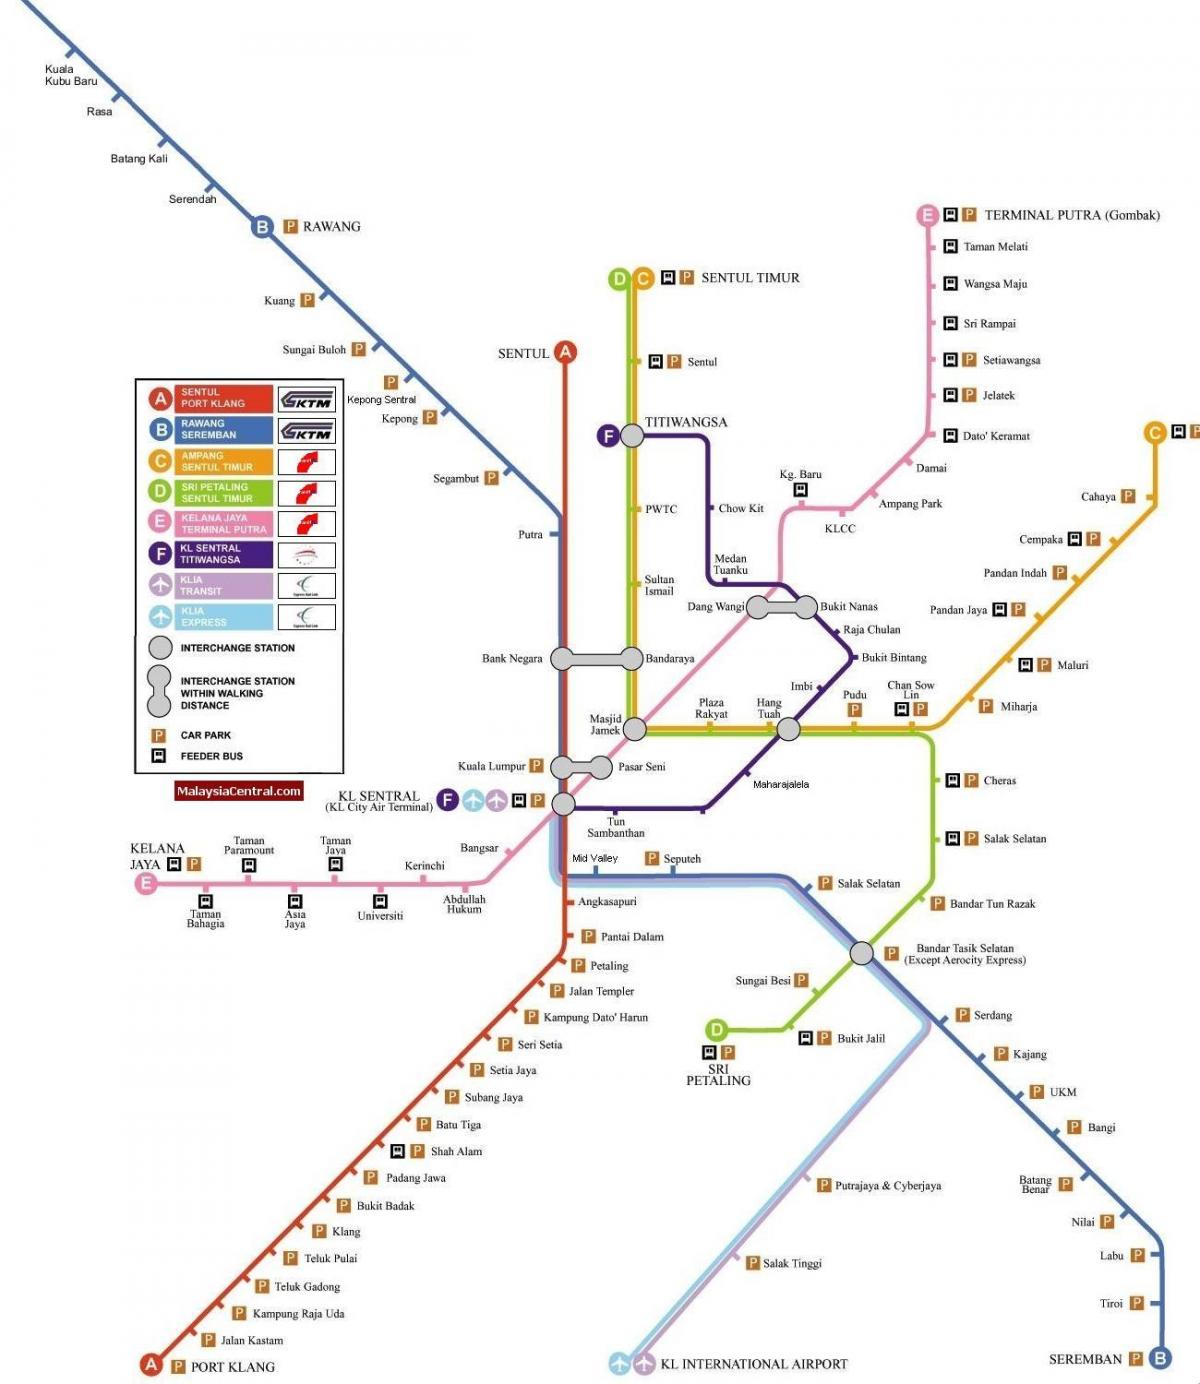 კუალა ლუმპურის light rail რუკა